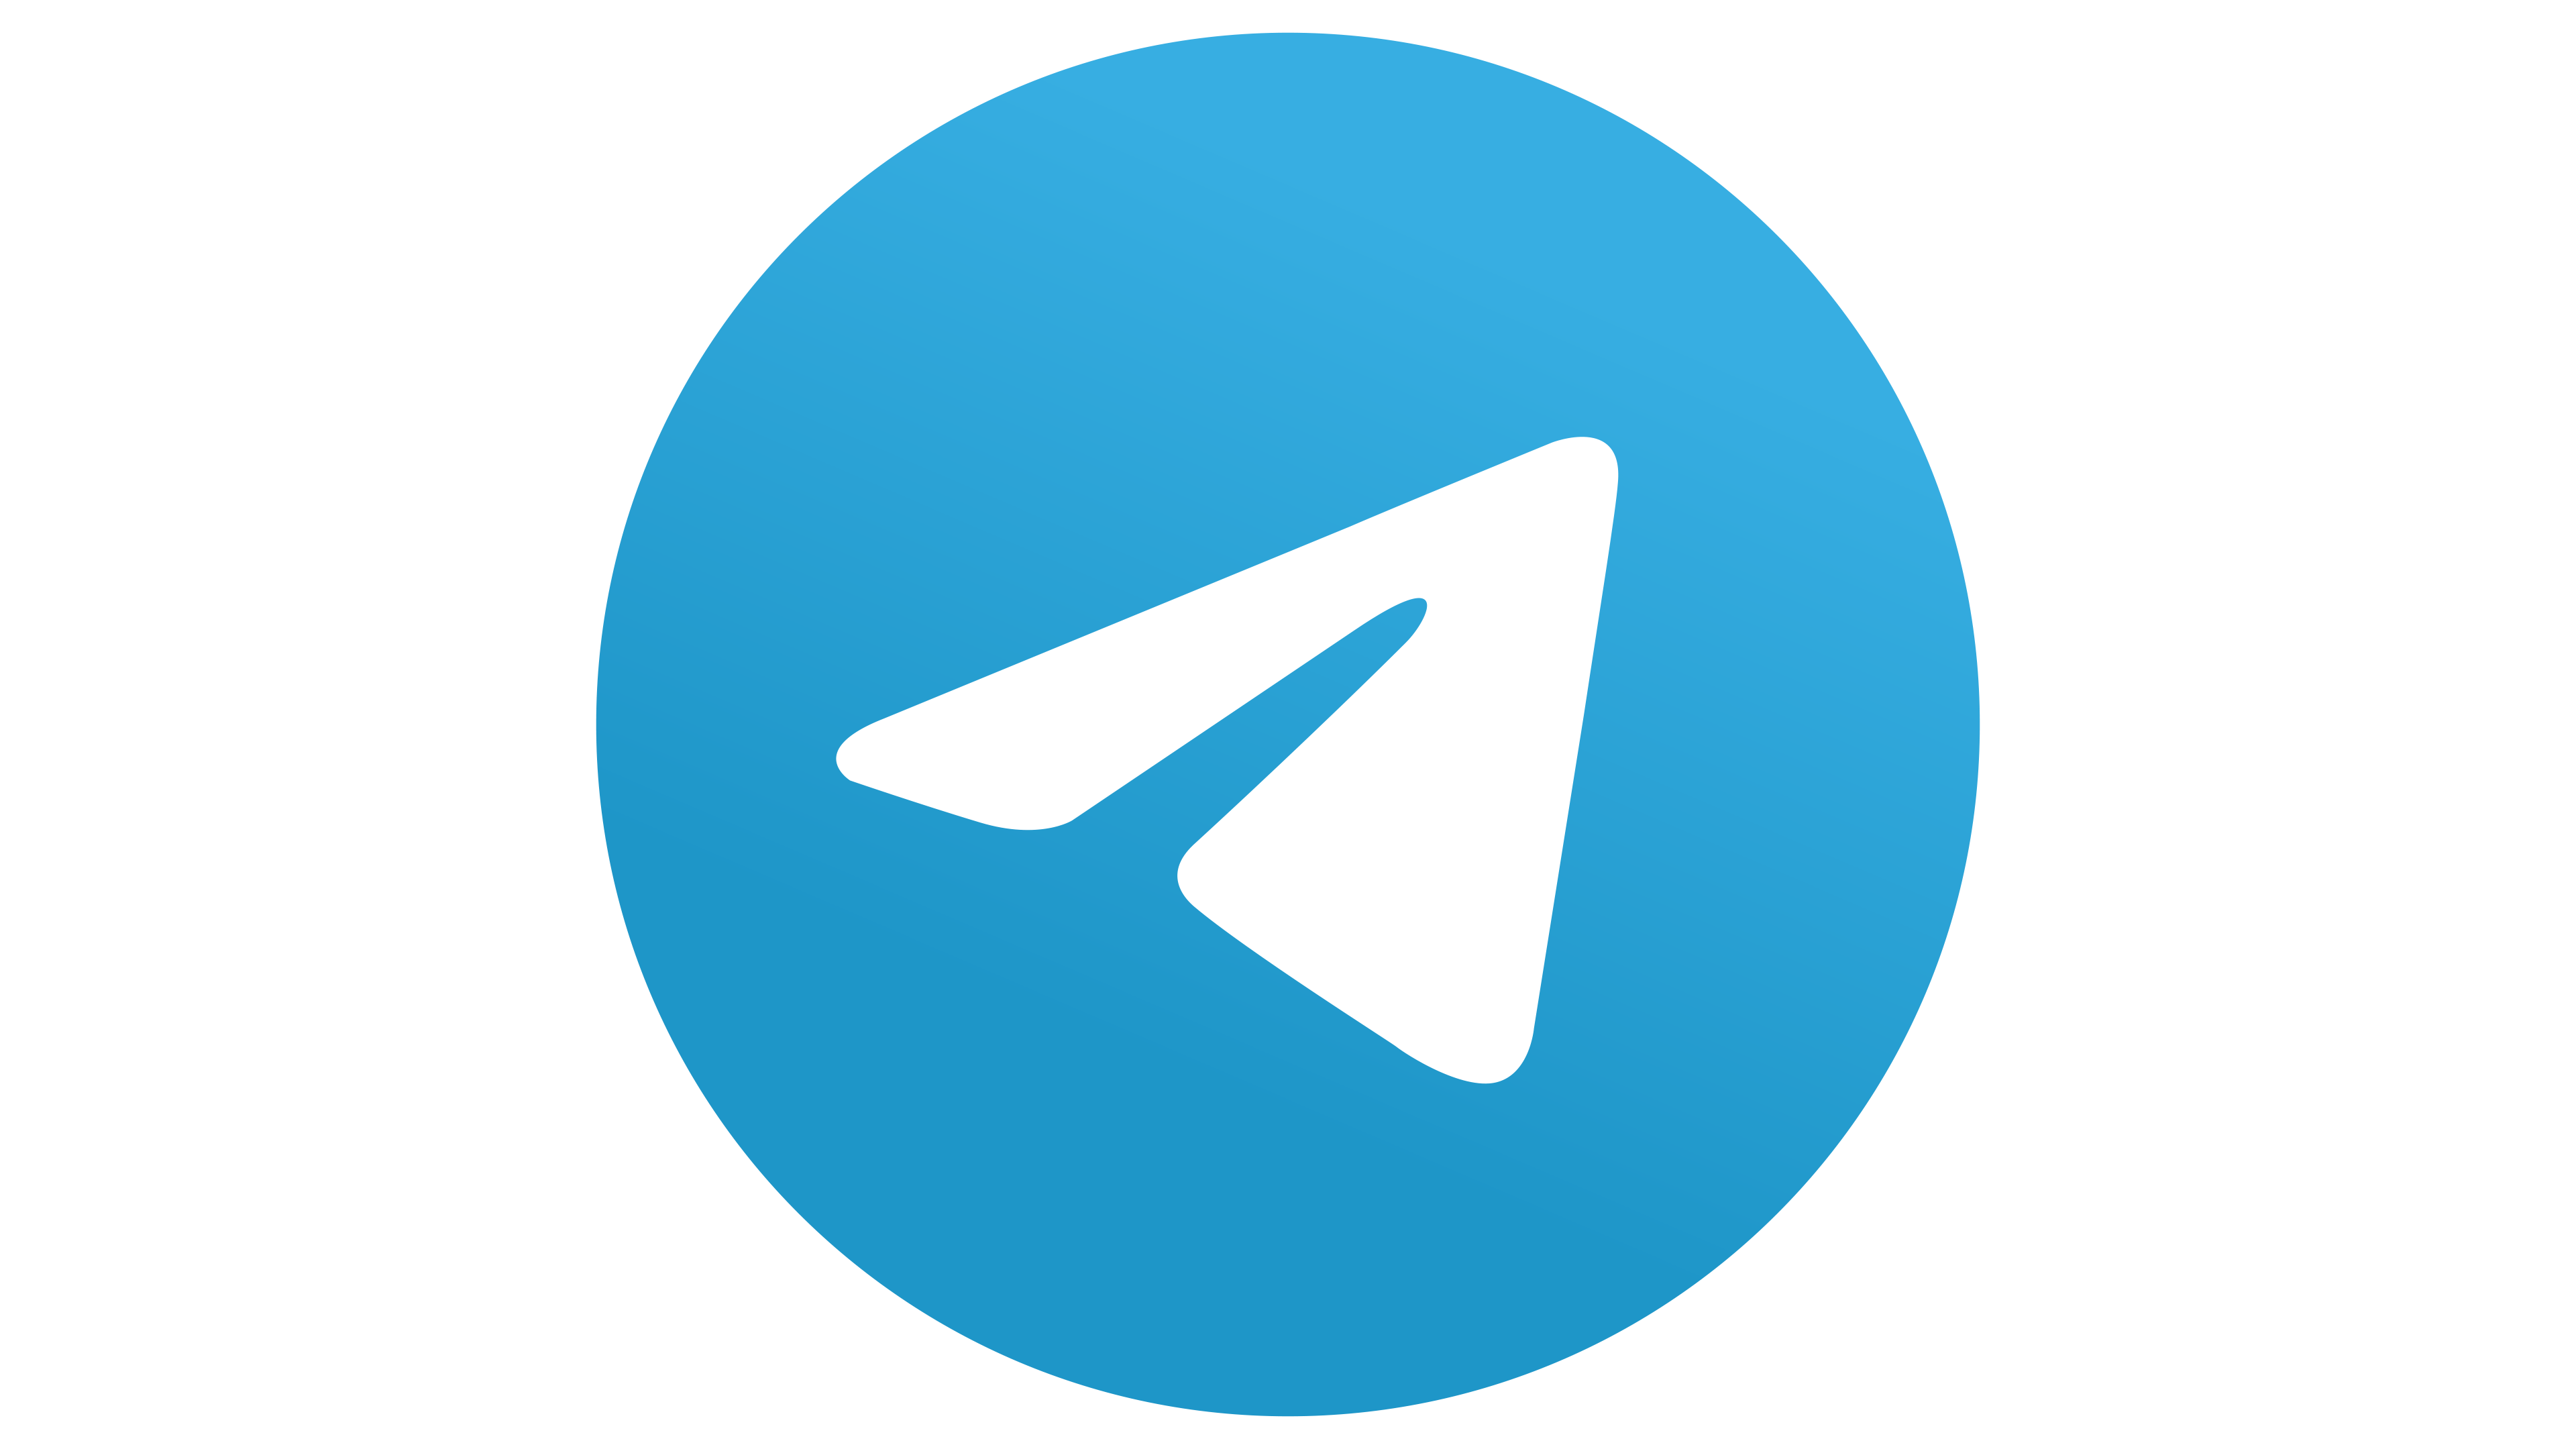 Telegram là gì? Hướng dẫn cách tải, cài đặt, đăng ký tài khoản, đăng ...